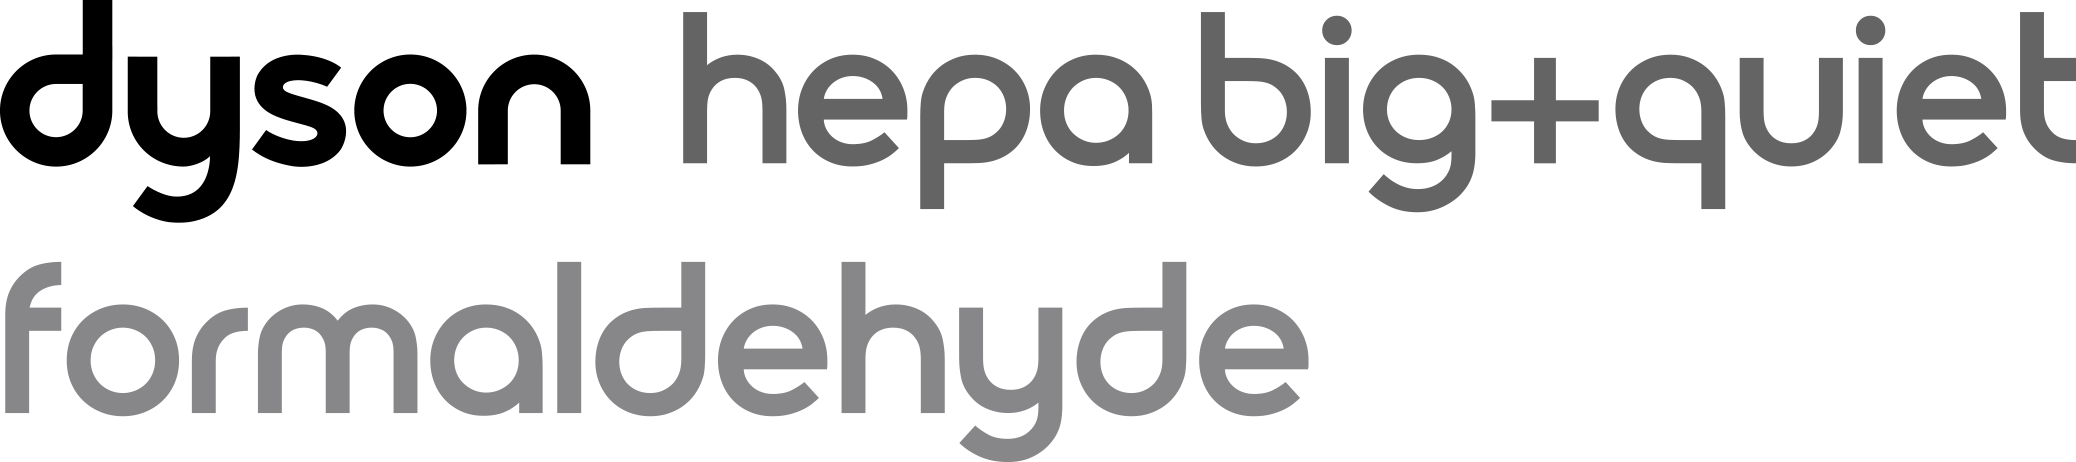 Dyson HEPA Big+Quiet Formaldehyde logo